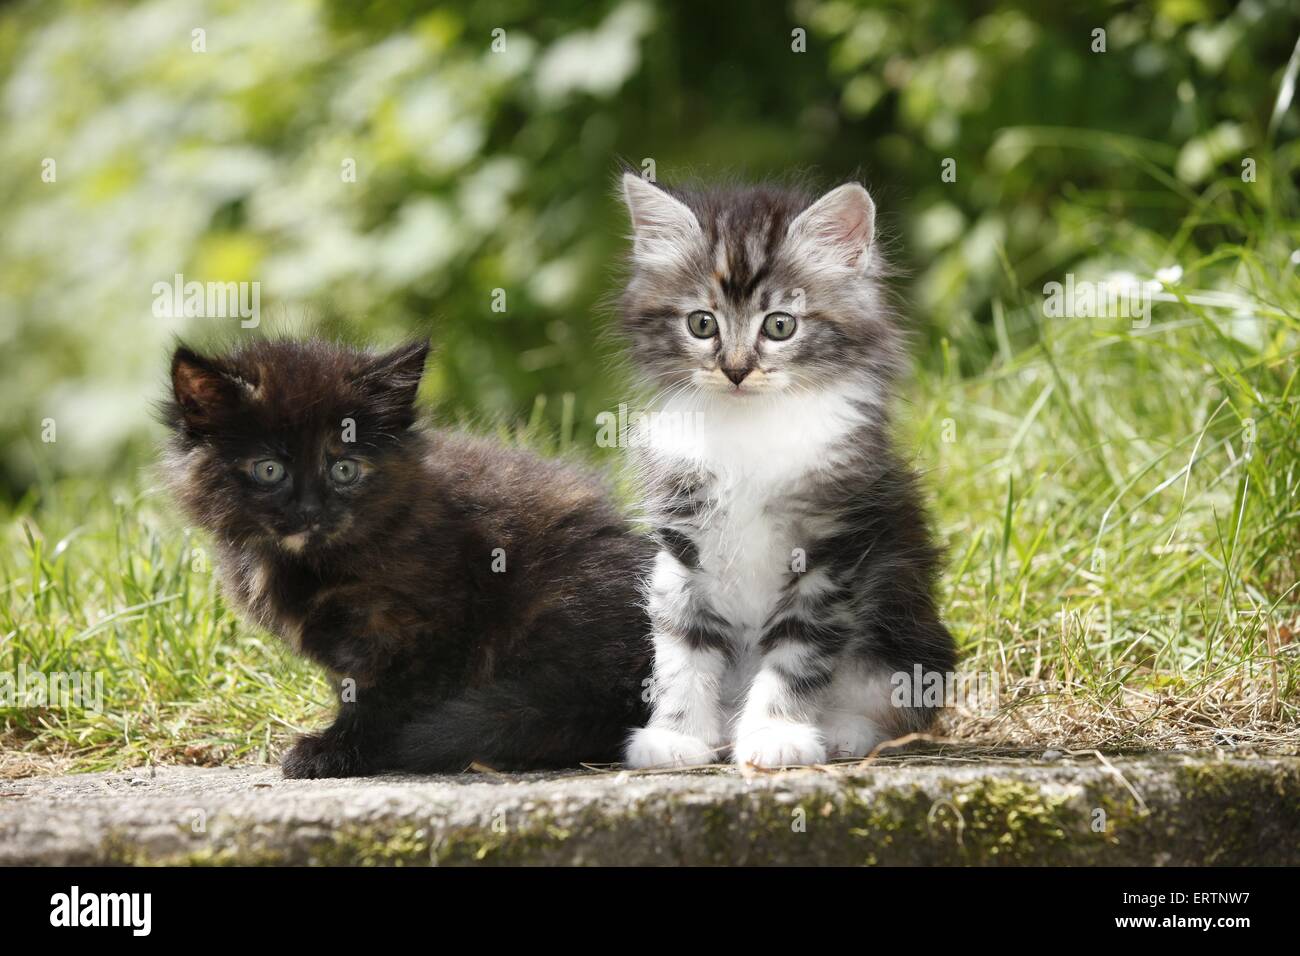 norwegian forest kittens Stock Photo